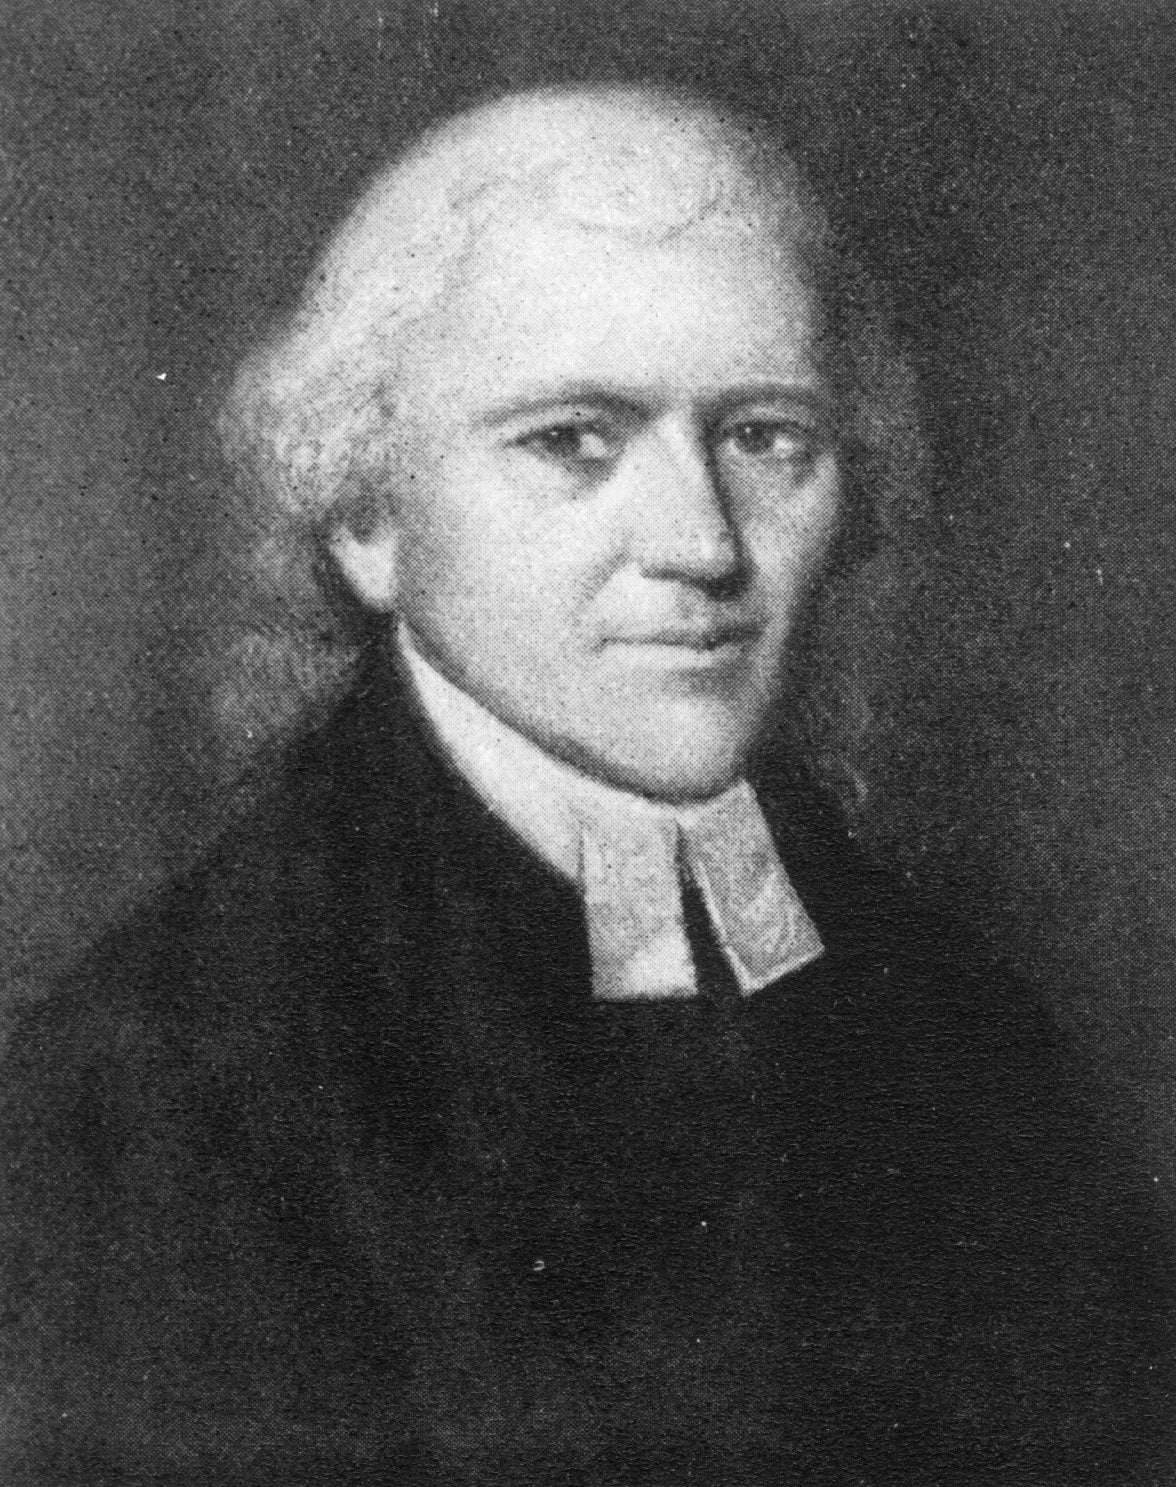 John Christopher Kunze, c. 1790